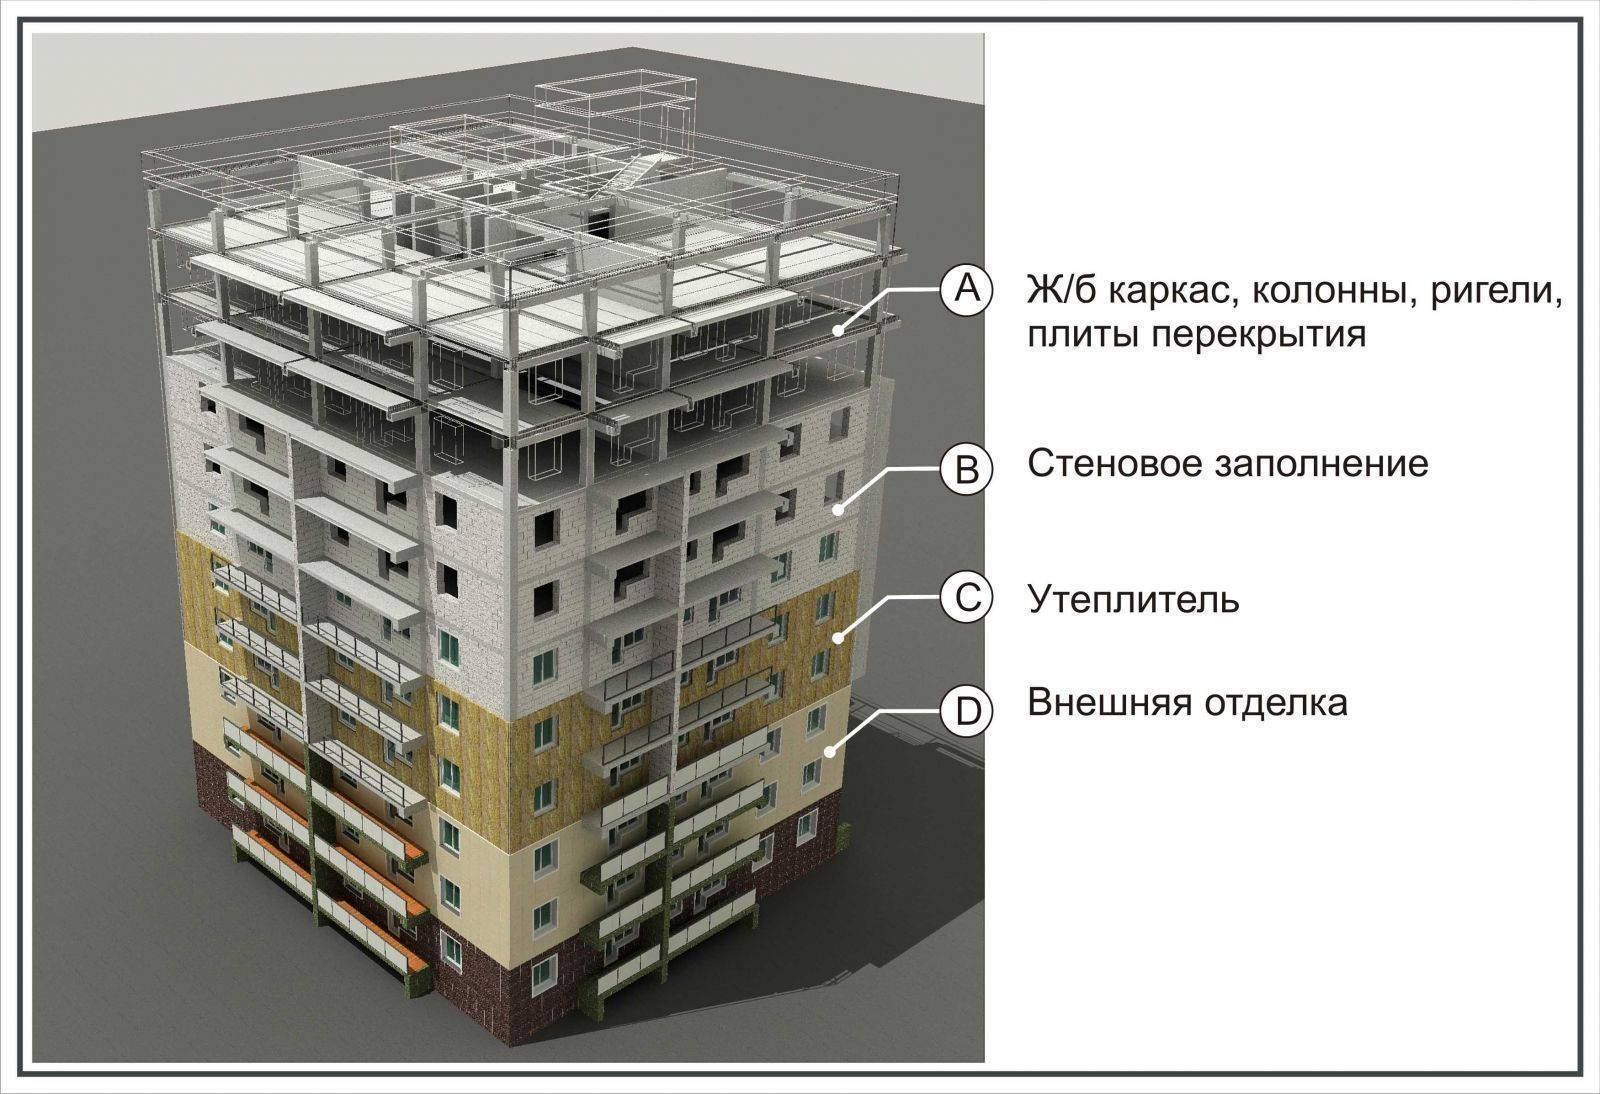 Многоэтажный каркасный дом - технология строительства и перспективы в росии